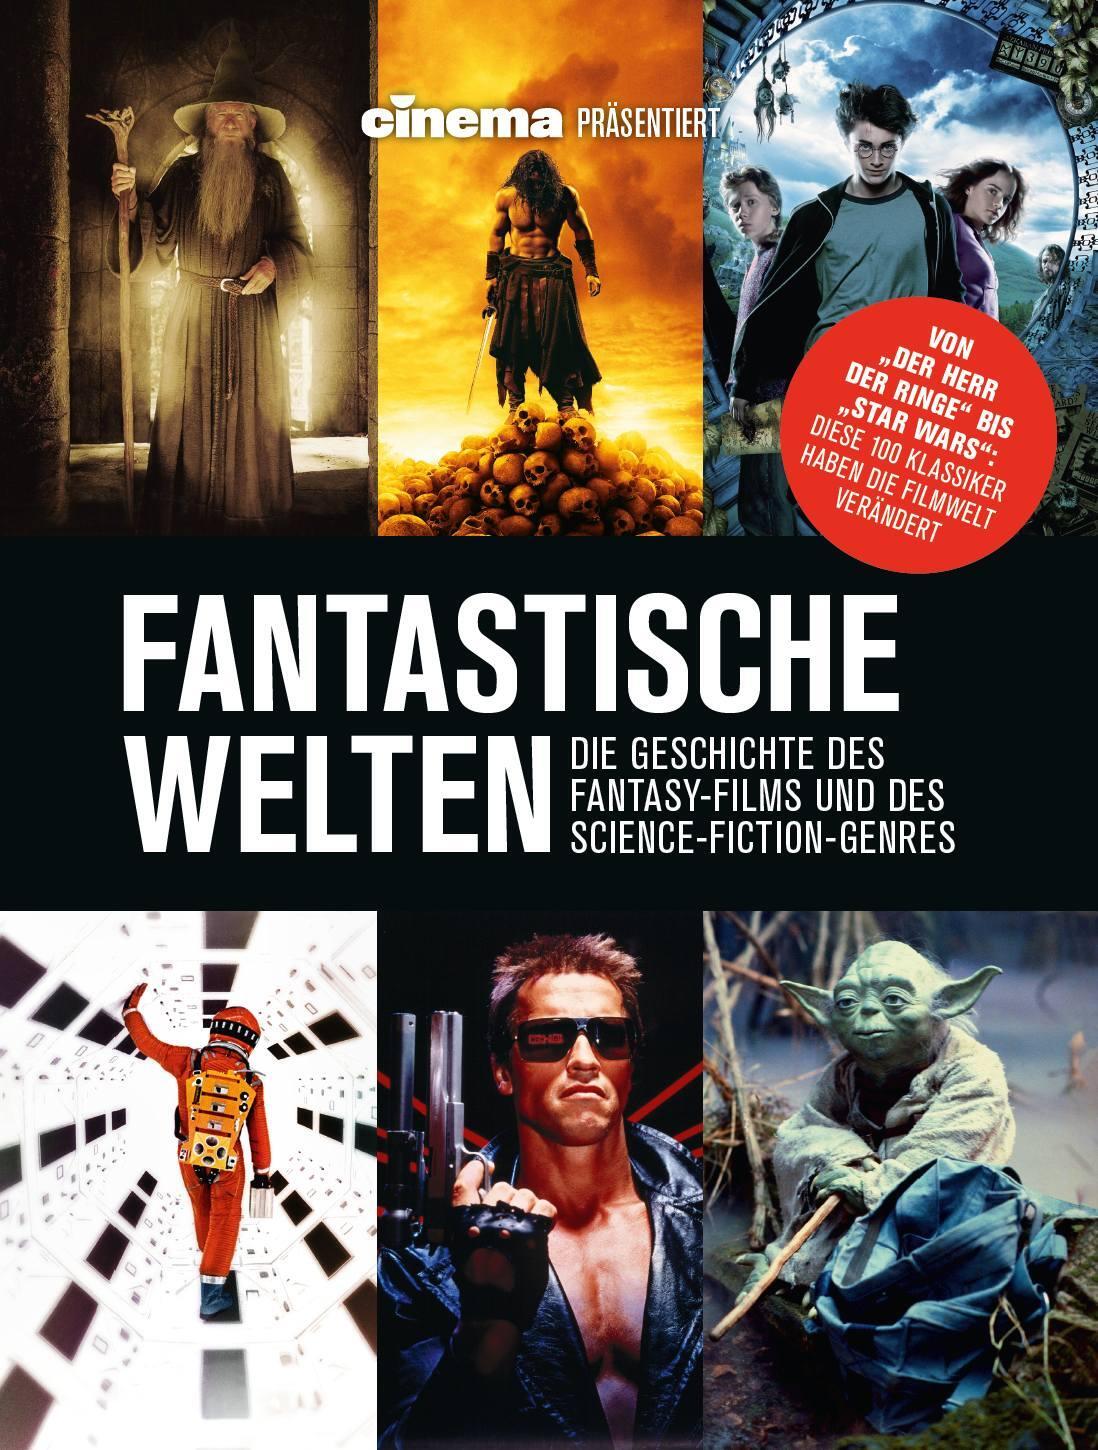 Cinema präsentiert: Fantastische Welten - Die Geschichte des Fantasy-Films und des Science-Fiction-Genres - Schulze, Philipp